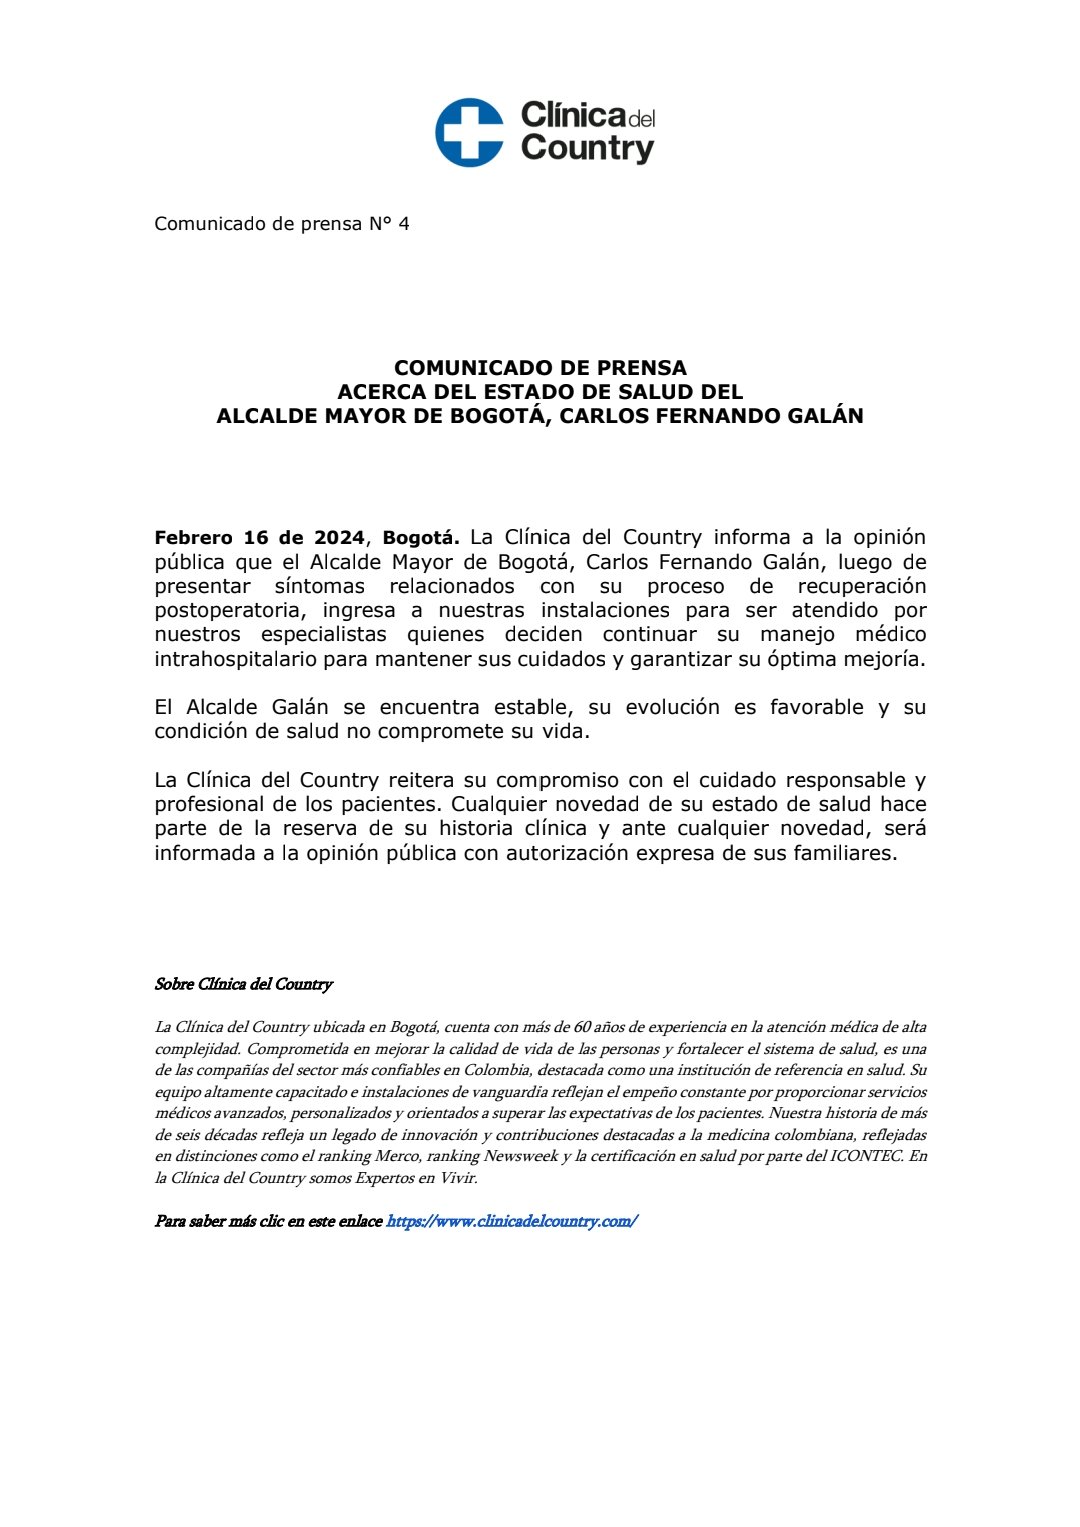 El comunicado de la clinica sobre el alcalde Carlos Fernando Galán